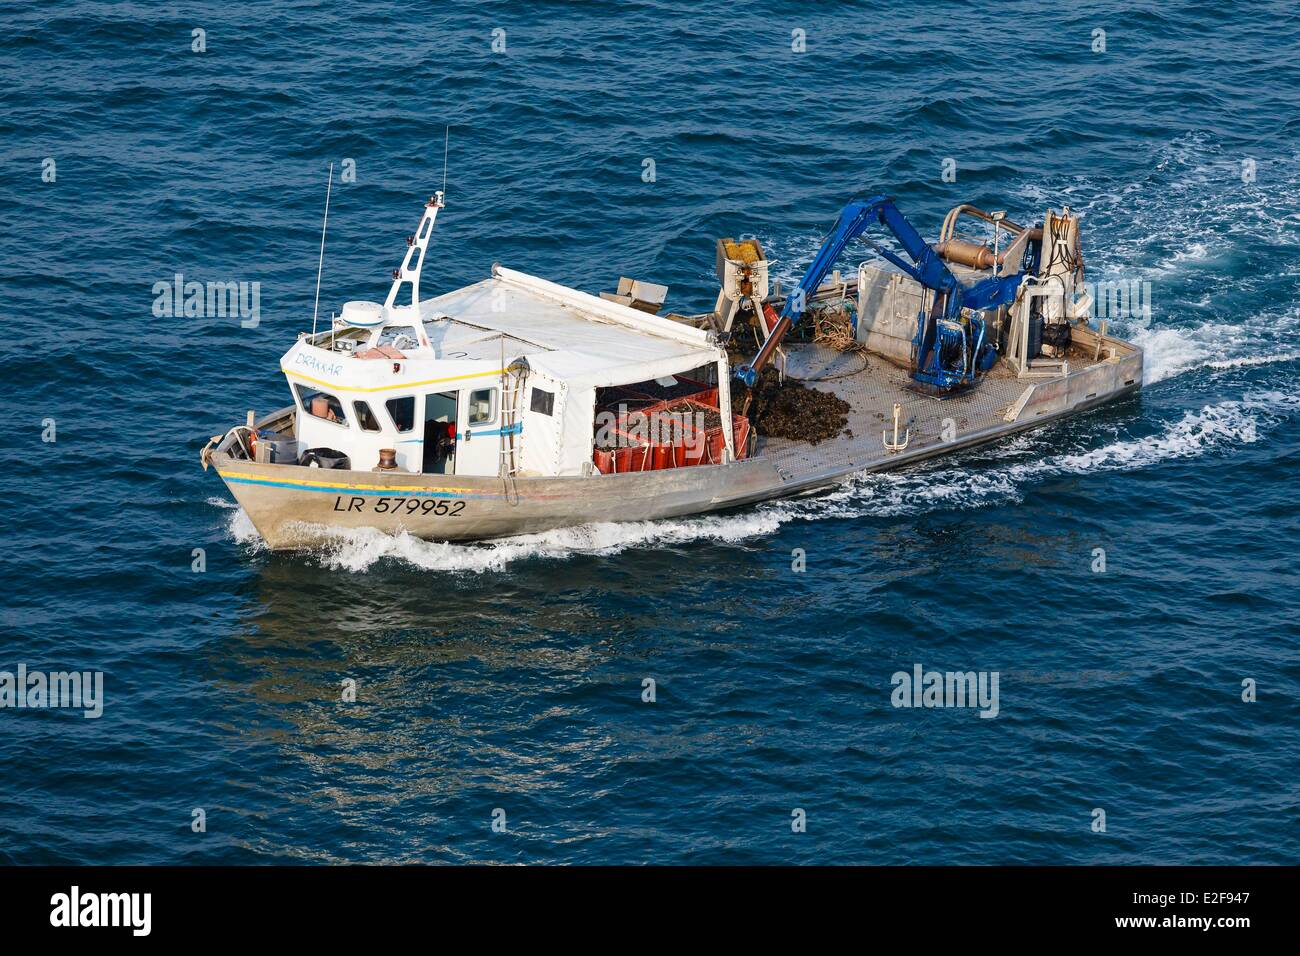 Francia, Vendee, La Faute-sur-Mer, mitilicoltura barca (vista aerea) Foto Stock